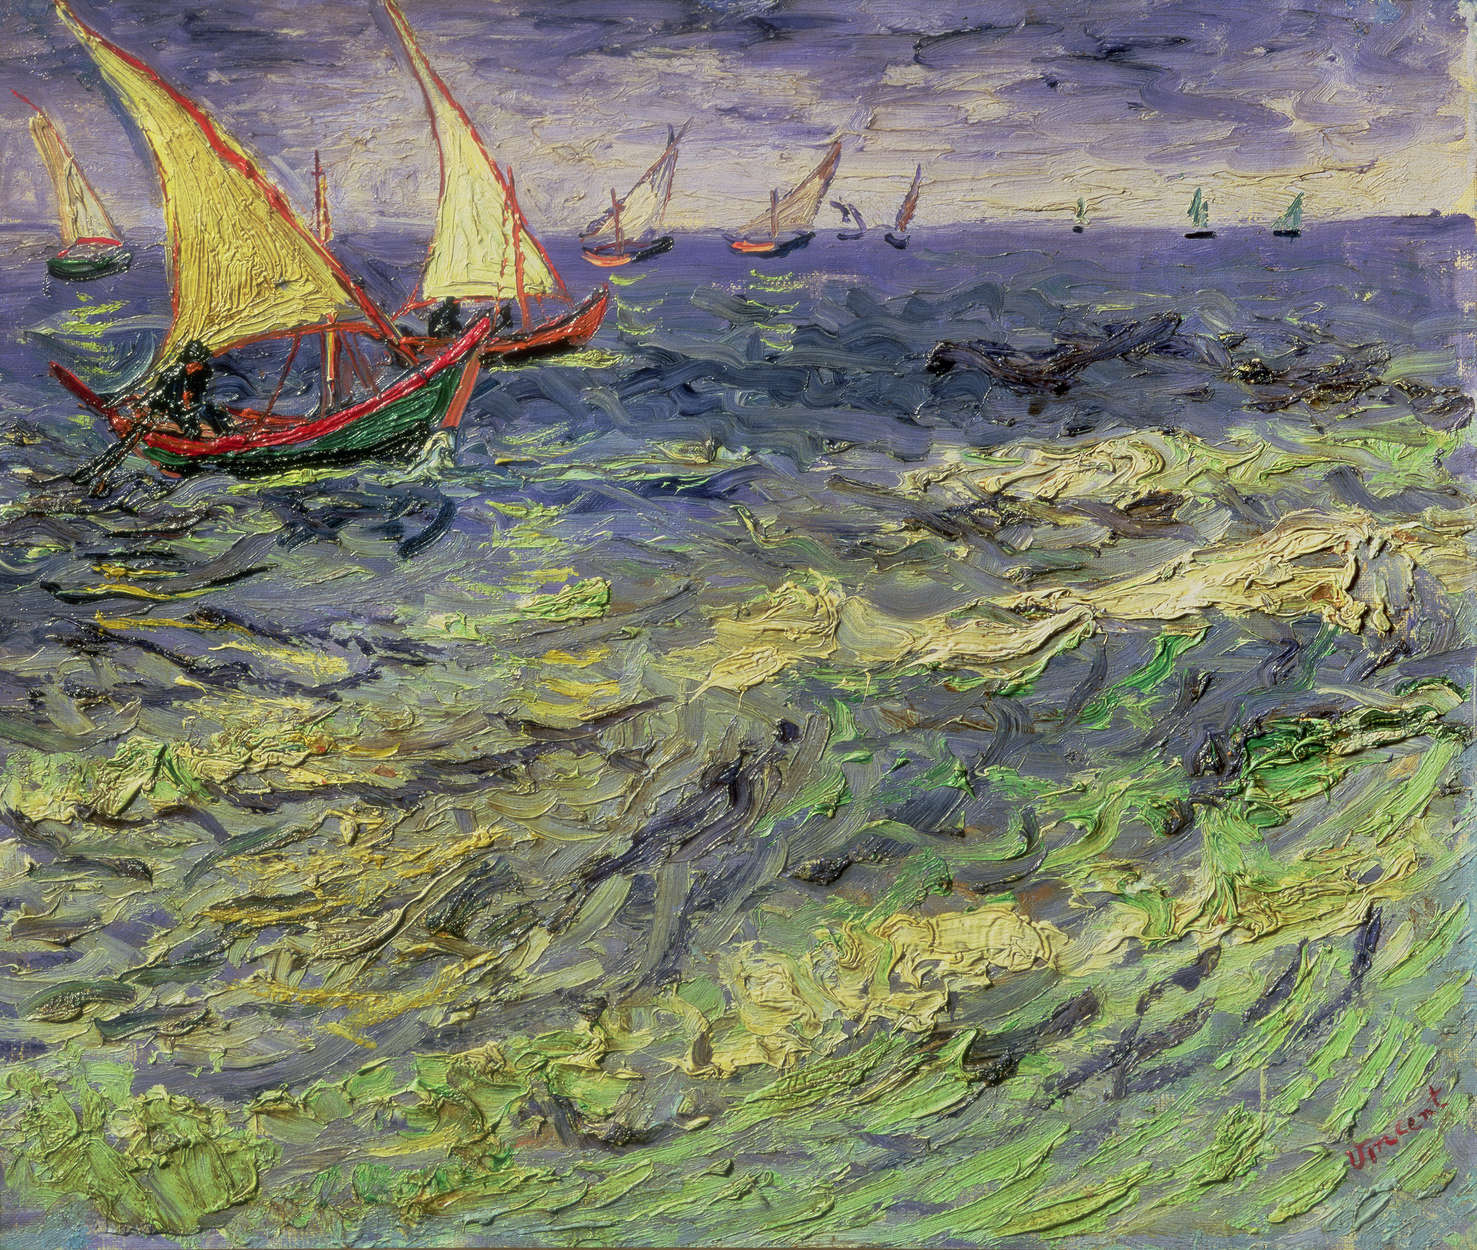             Zeelandschap bij Saintes-Maries" muurschildering van Vincent van Gogh
        